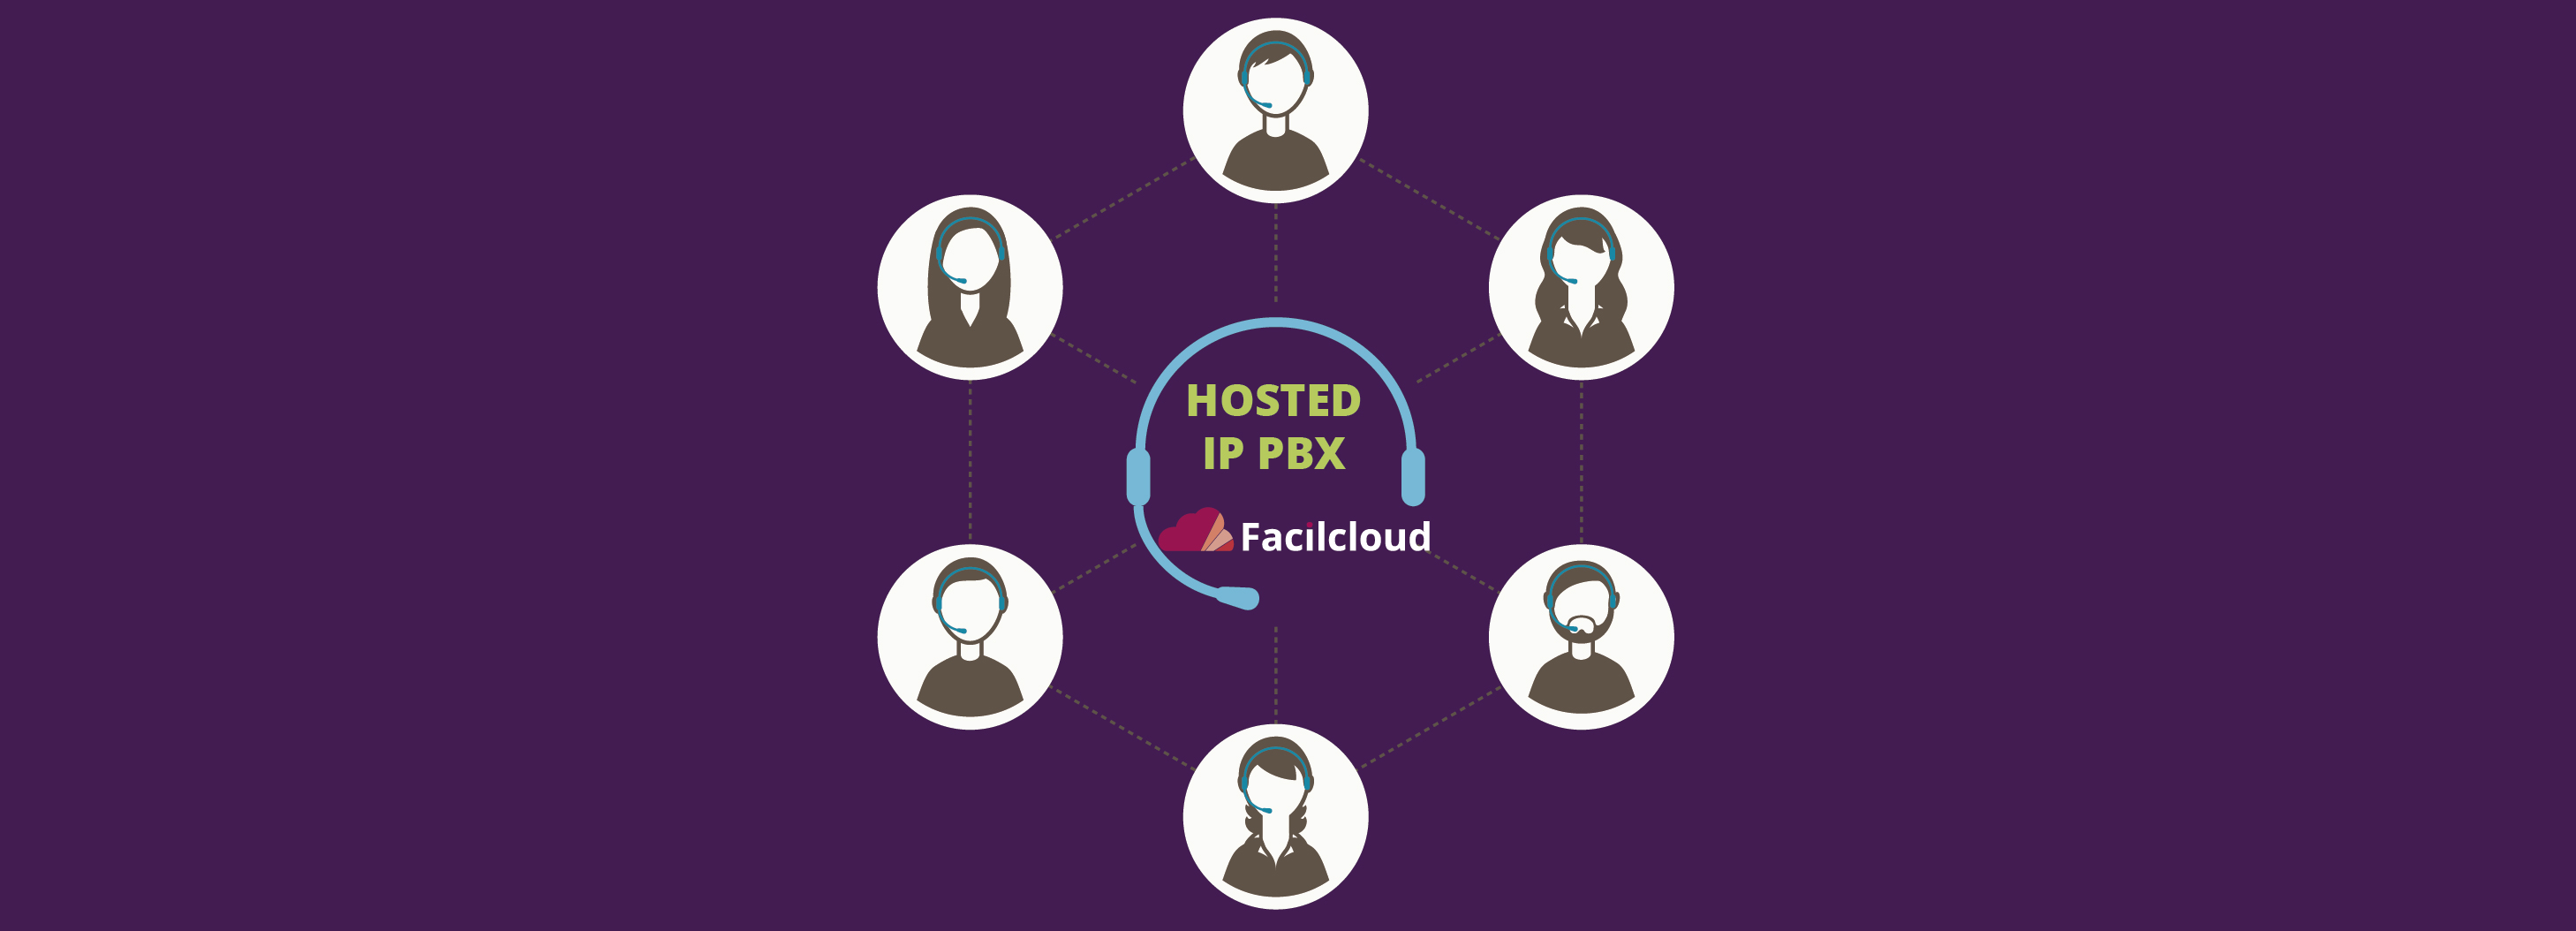 Hosted IP PBX: el nuevo Centro de Comunicaciones Unificadas de Facilcloud